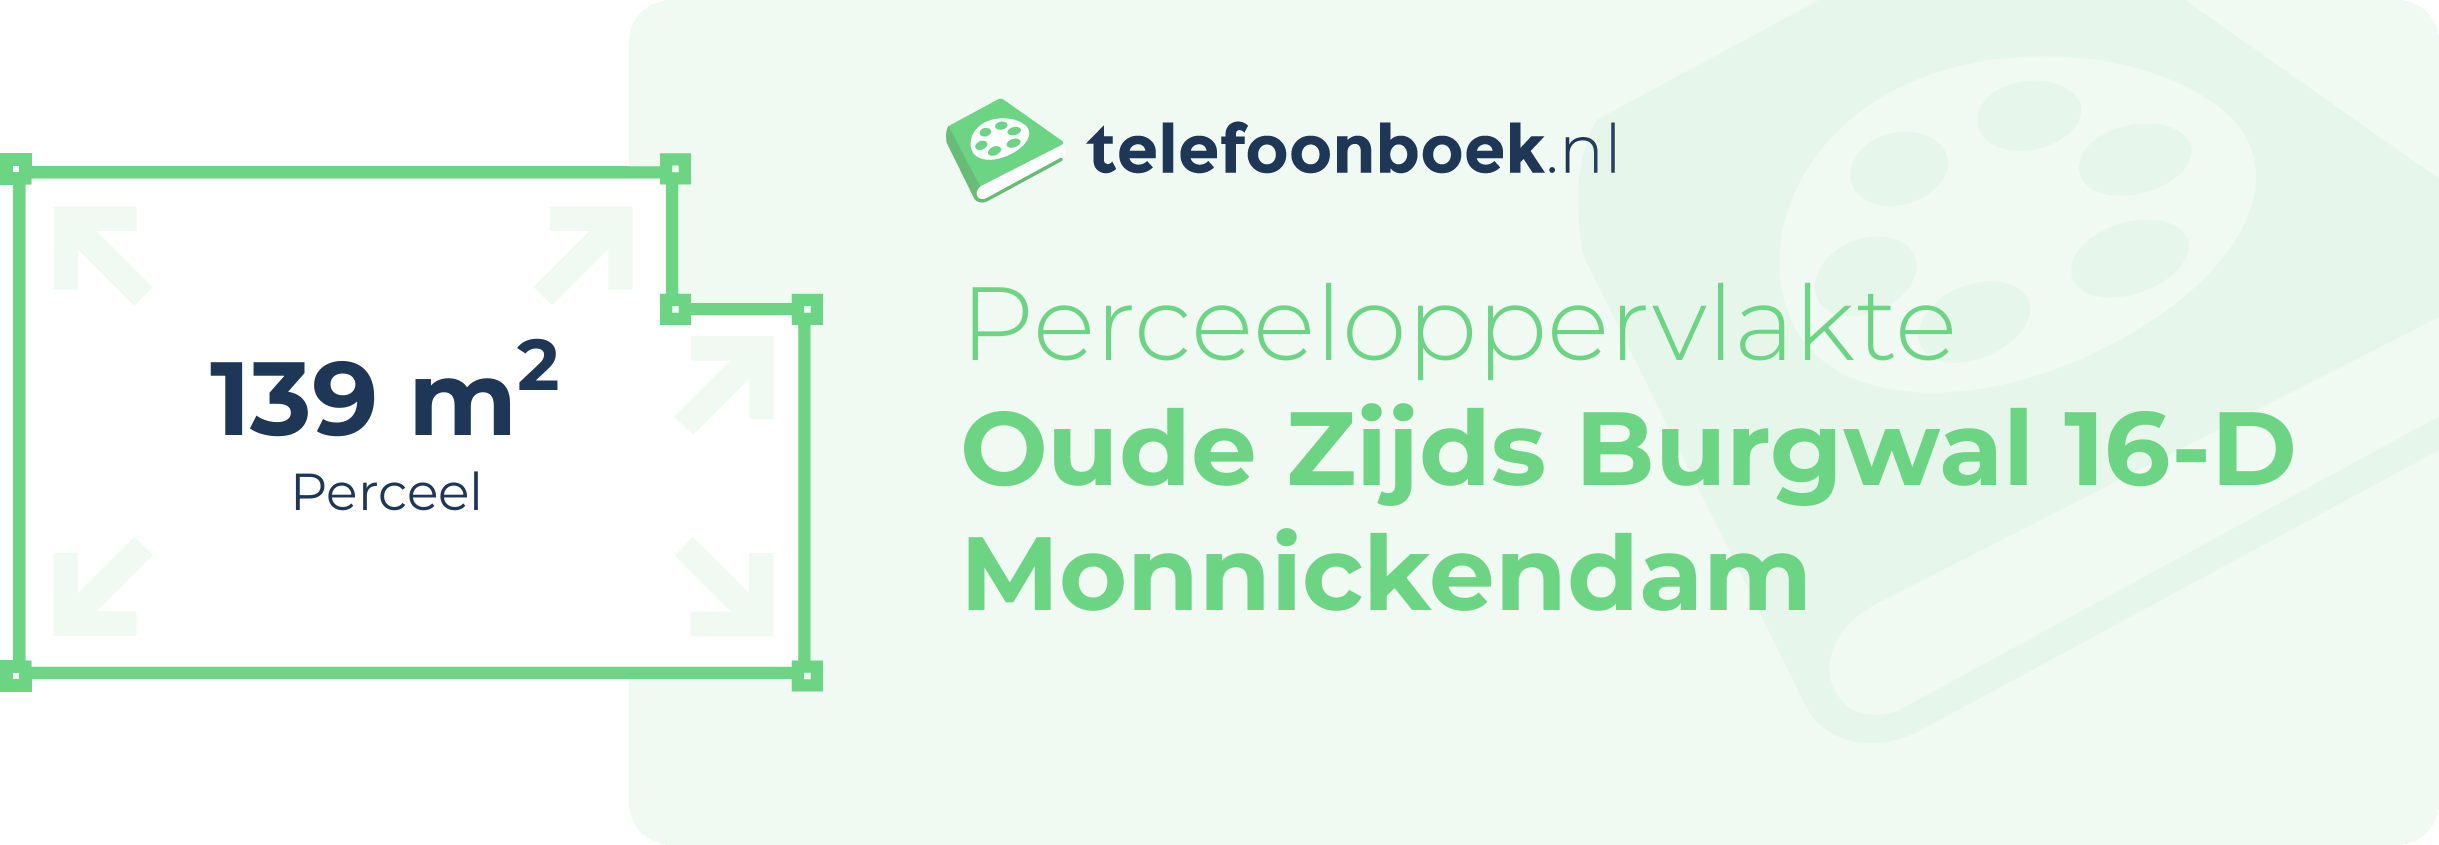 Perceeloppervlakte Oude Zijds Burgwal 16-D Monnickendam